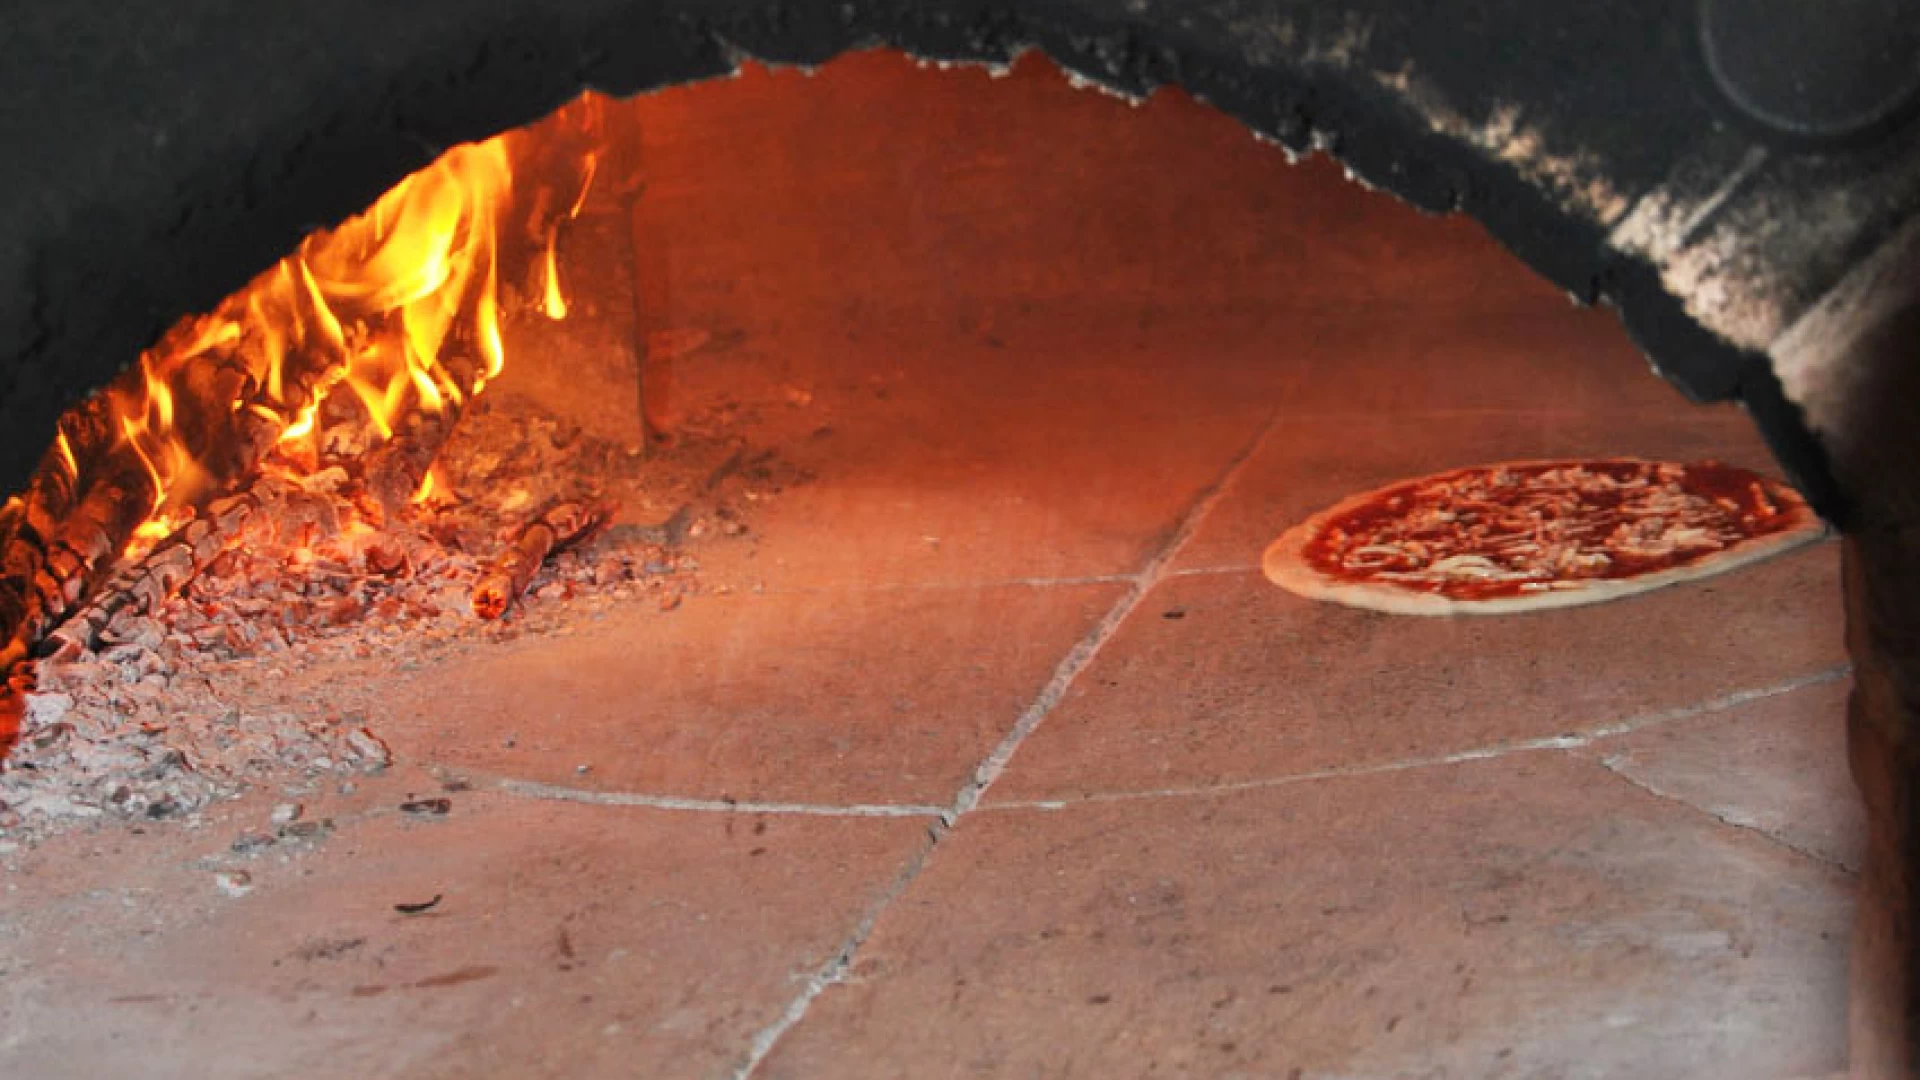 Pettoranello del Molise: venerdì 20 dicembre la seconda edizione dell’evento di beneficenza “Una Pizza per un sorriso”.